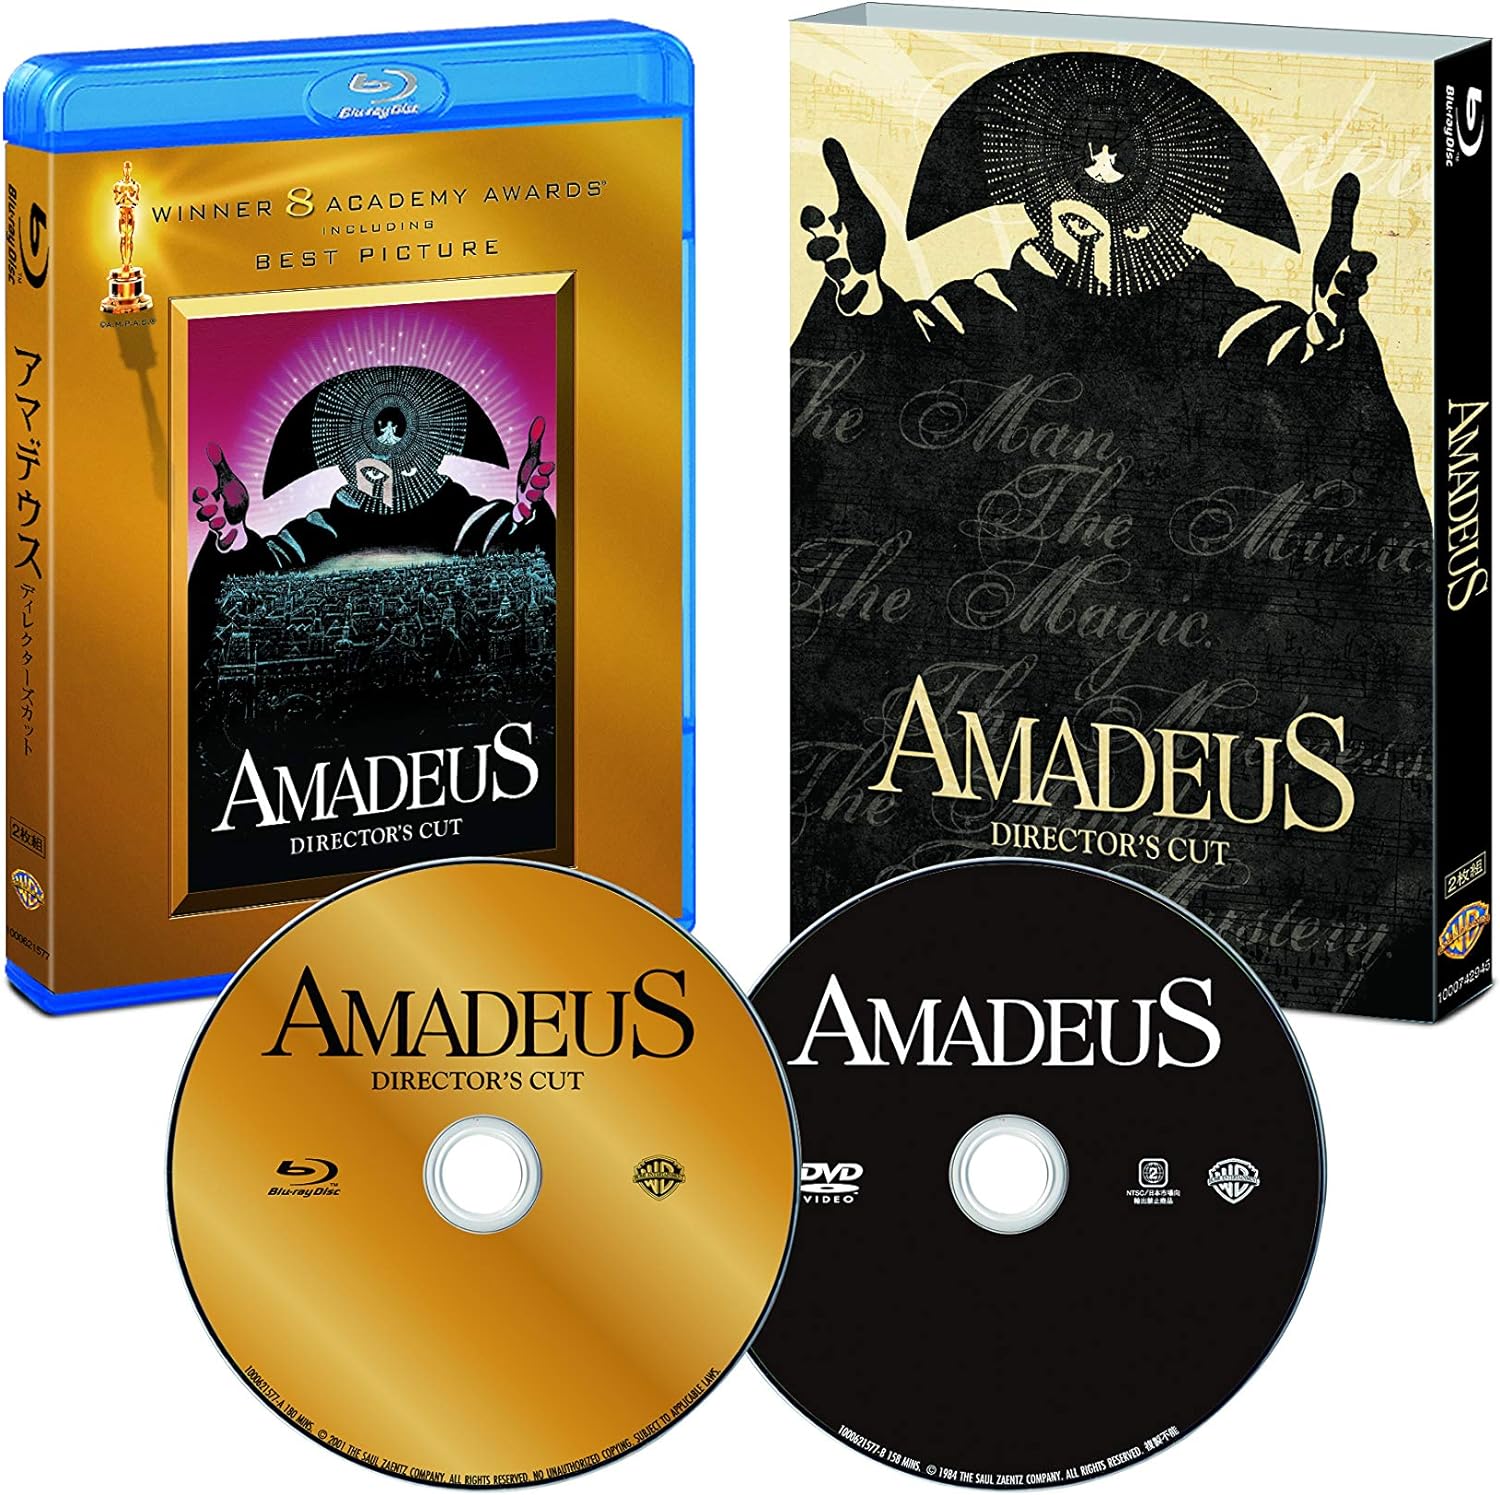 アマデウス 日本語吹替音声追加収録版 ブルーレイ&DVD(2枚組) [Blu-ray]